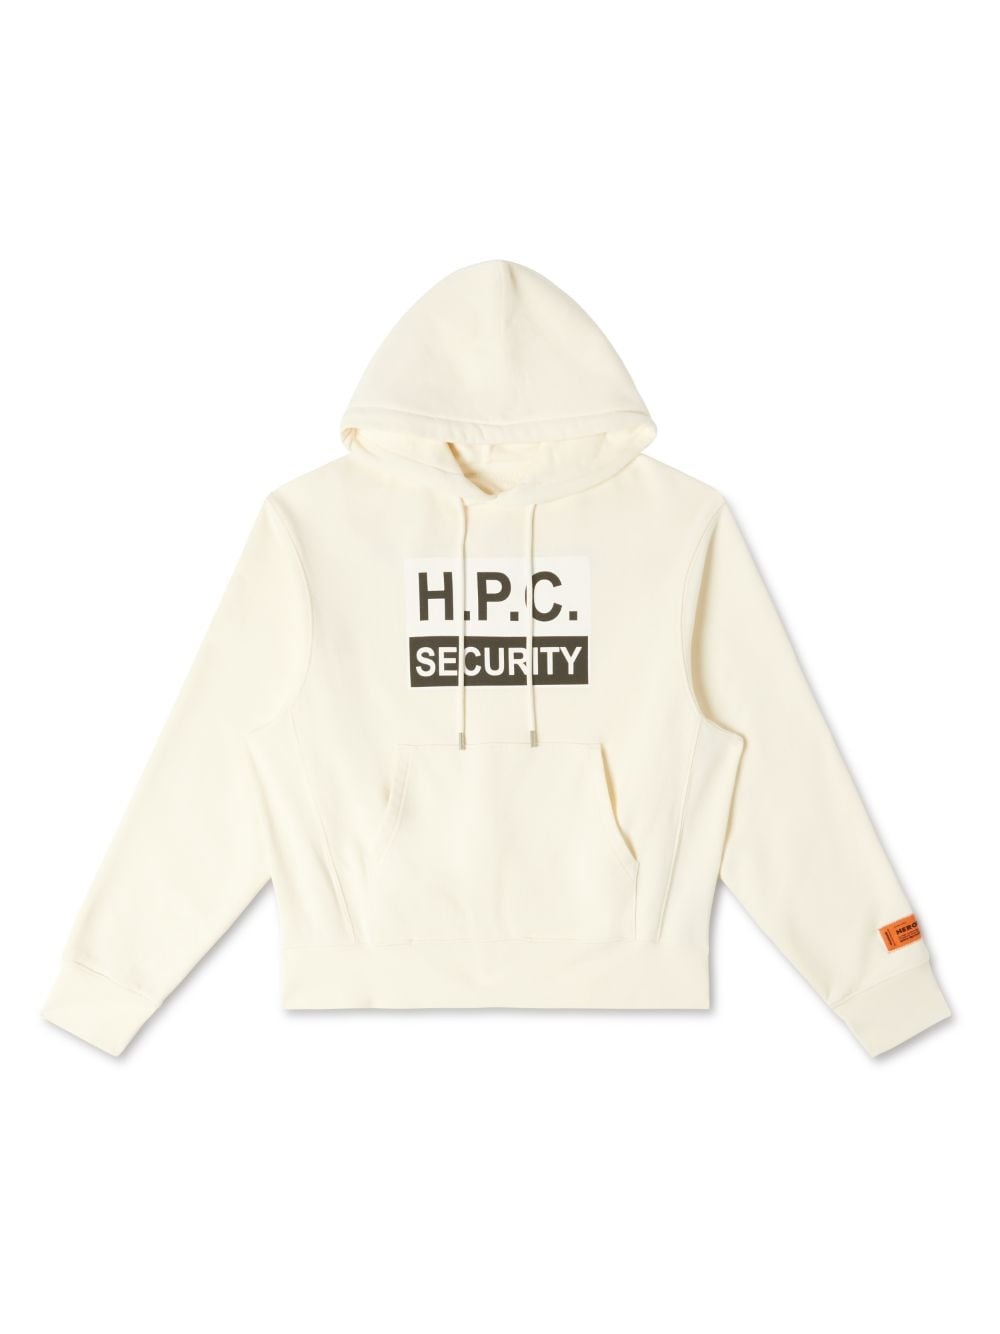 H.P.C Security Hoodie - 1